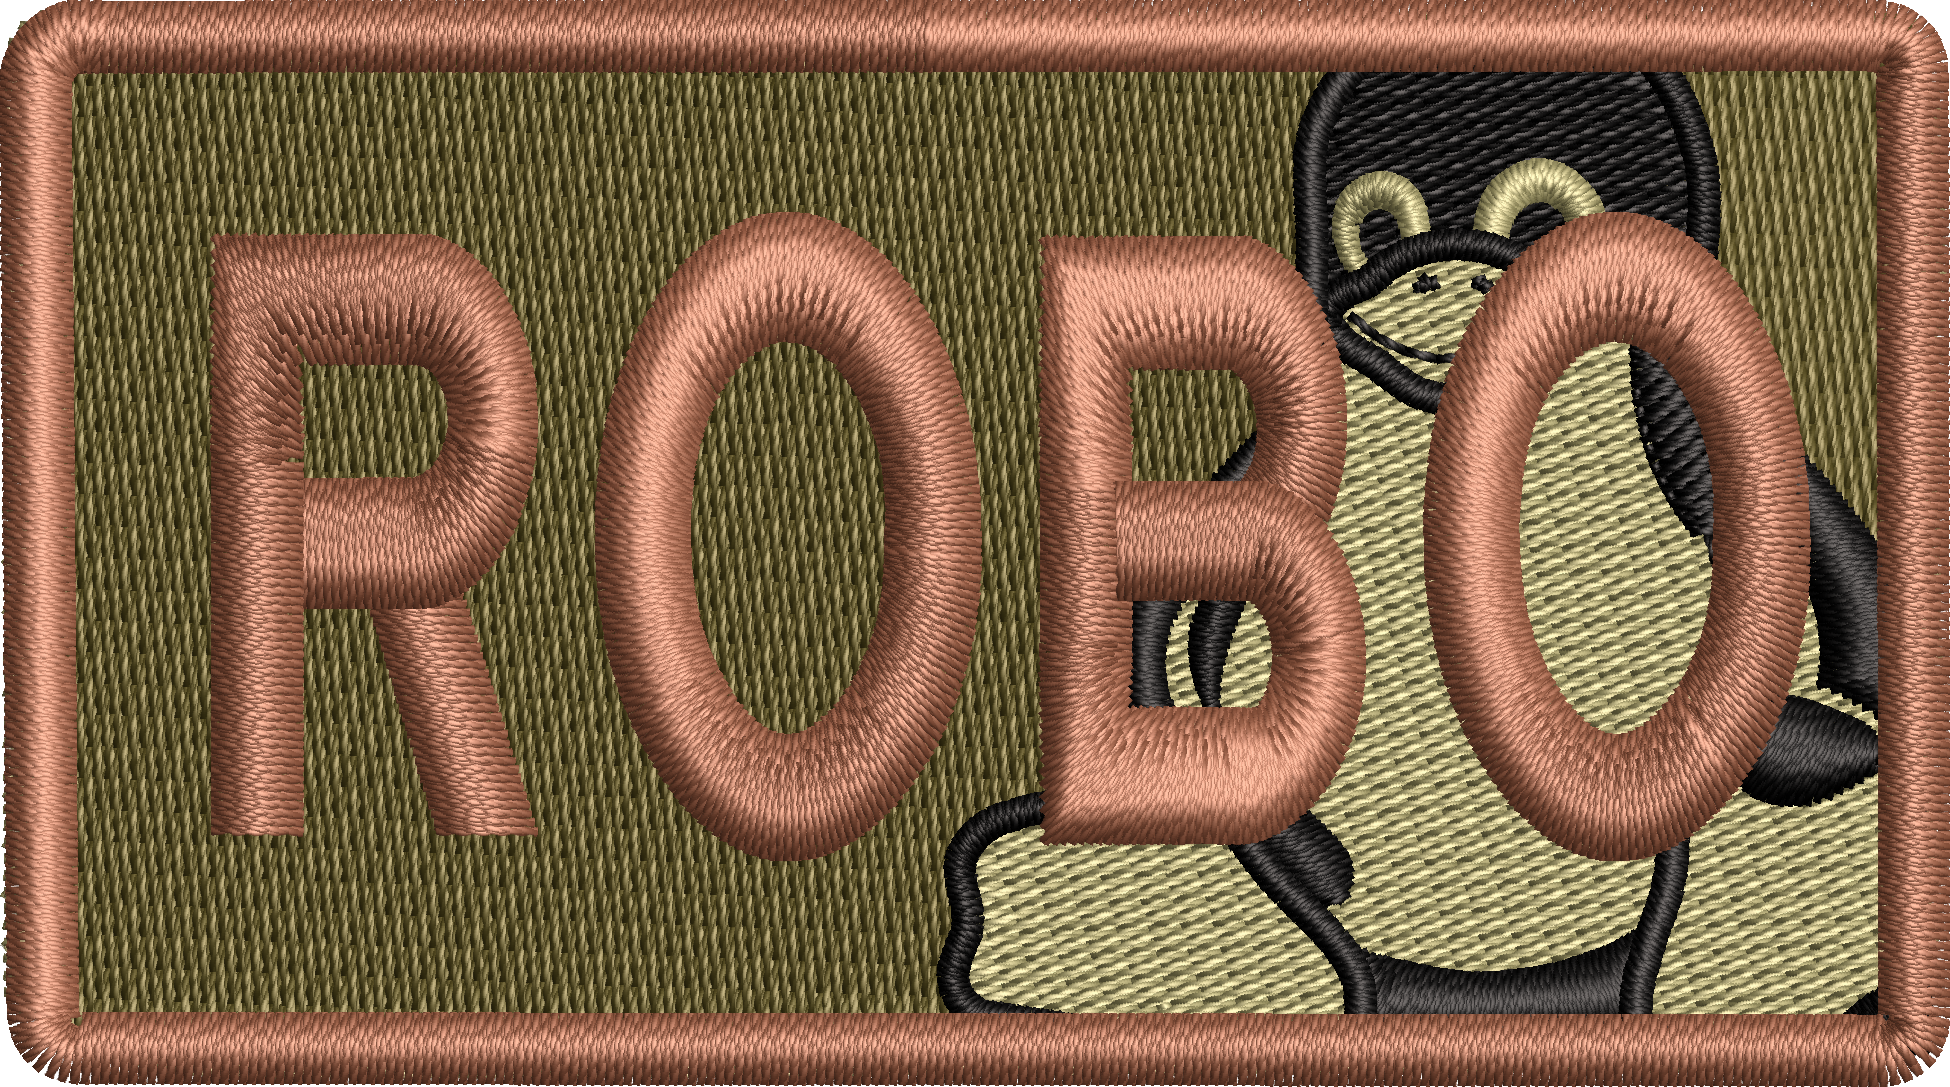 ROBO - Duty Identifier Patch